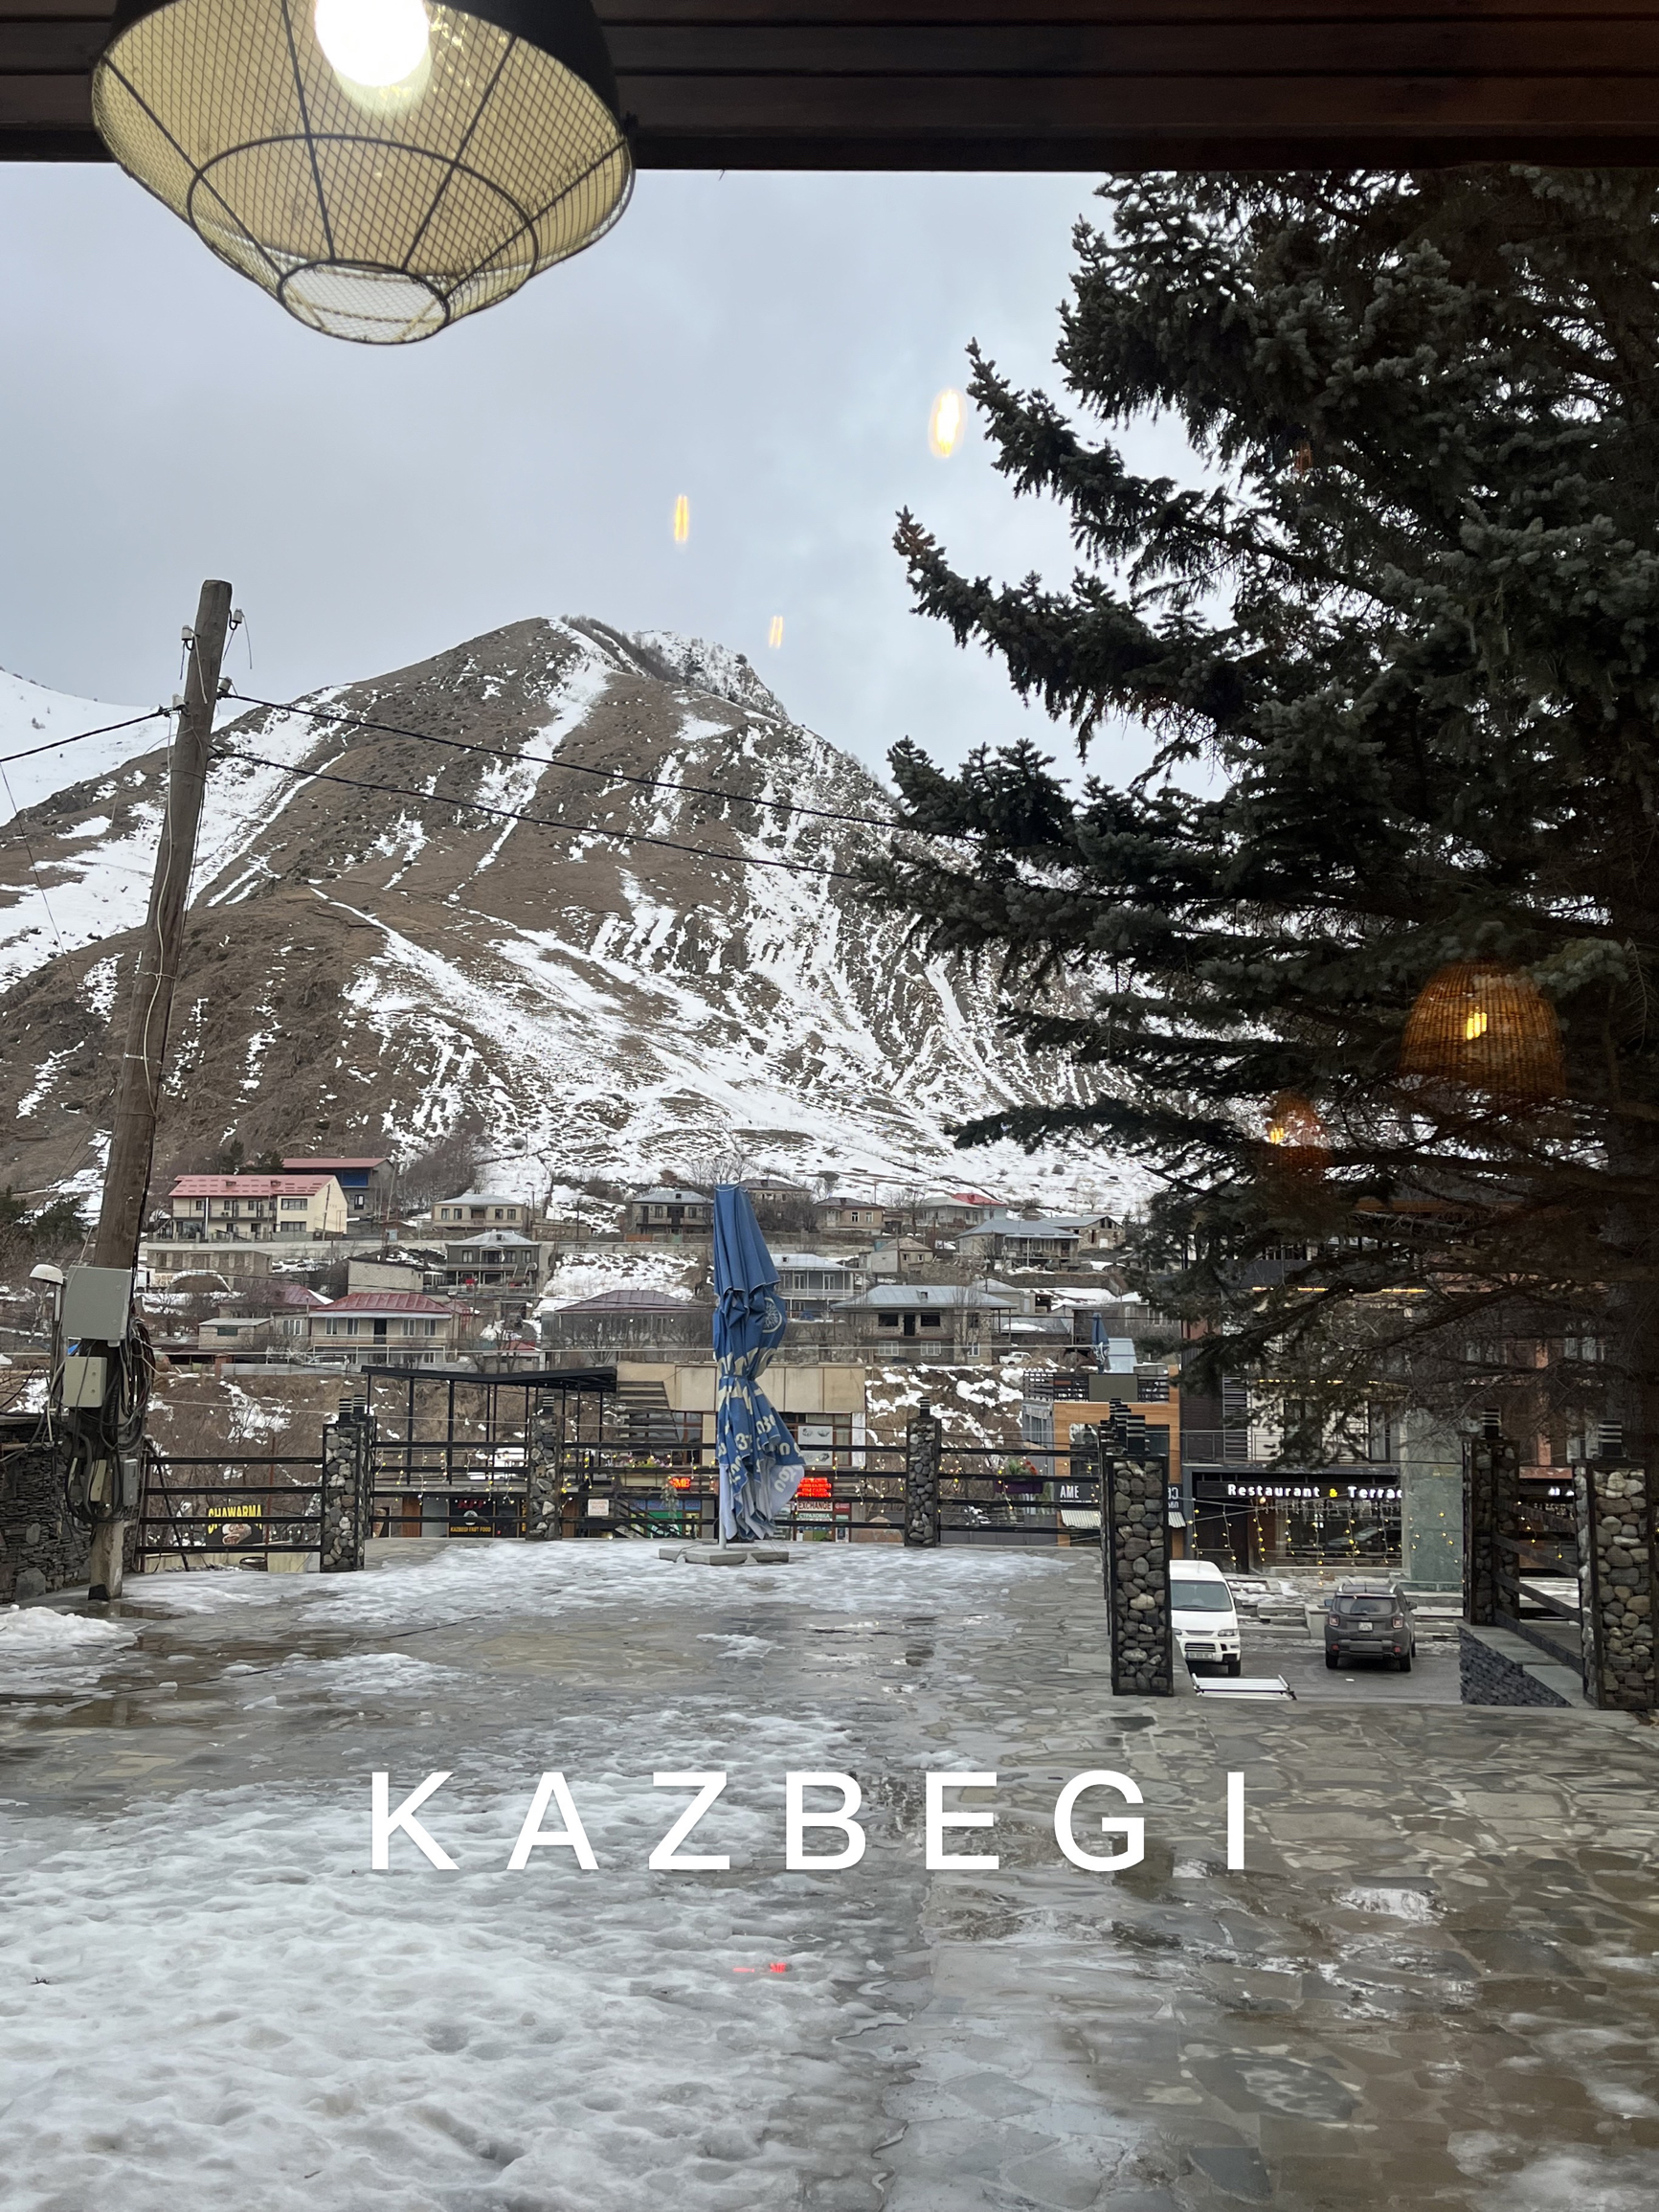 kazbegi卡兹别克｜普罗米修斯被囚禁的地方……